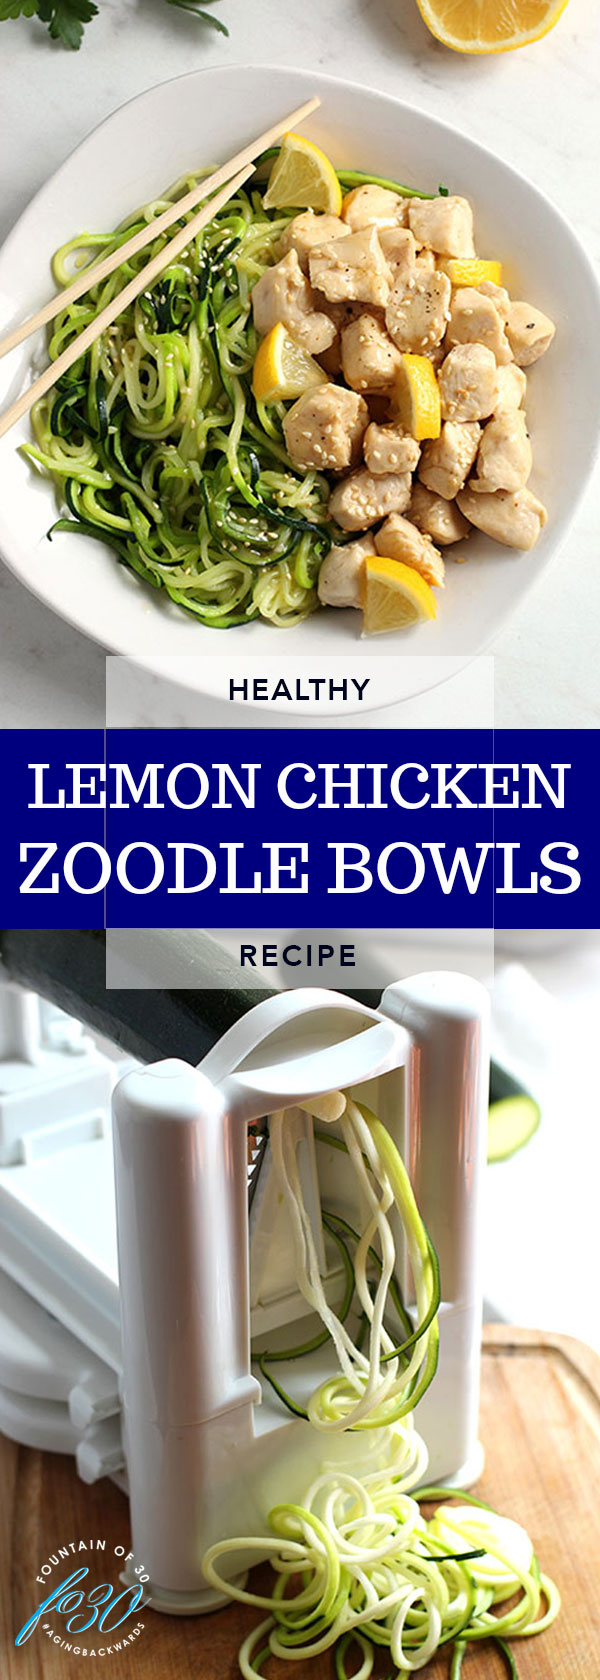 lemon chicken zoodle bowls